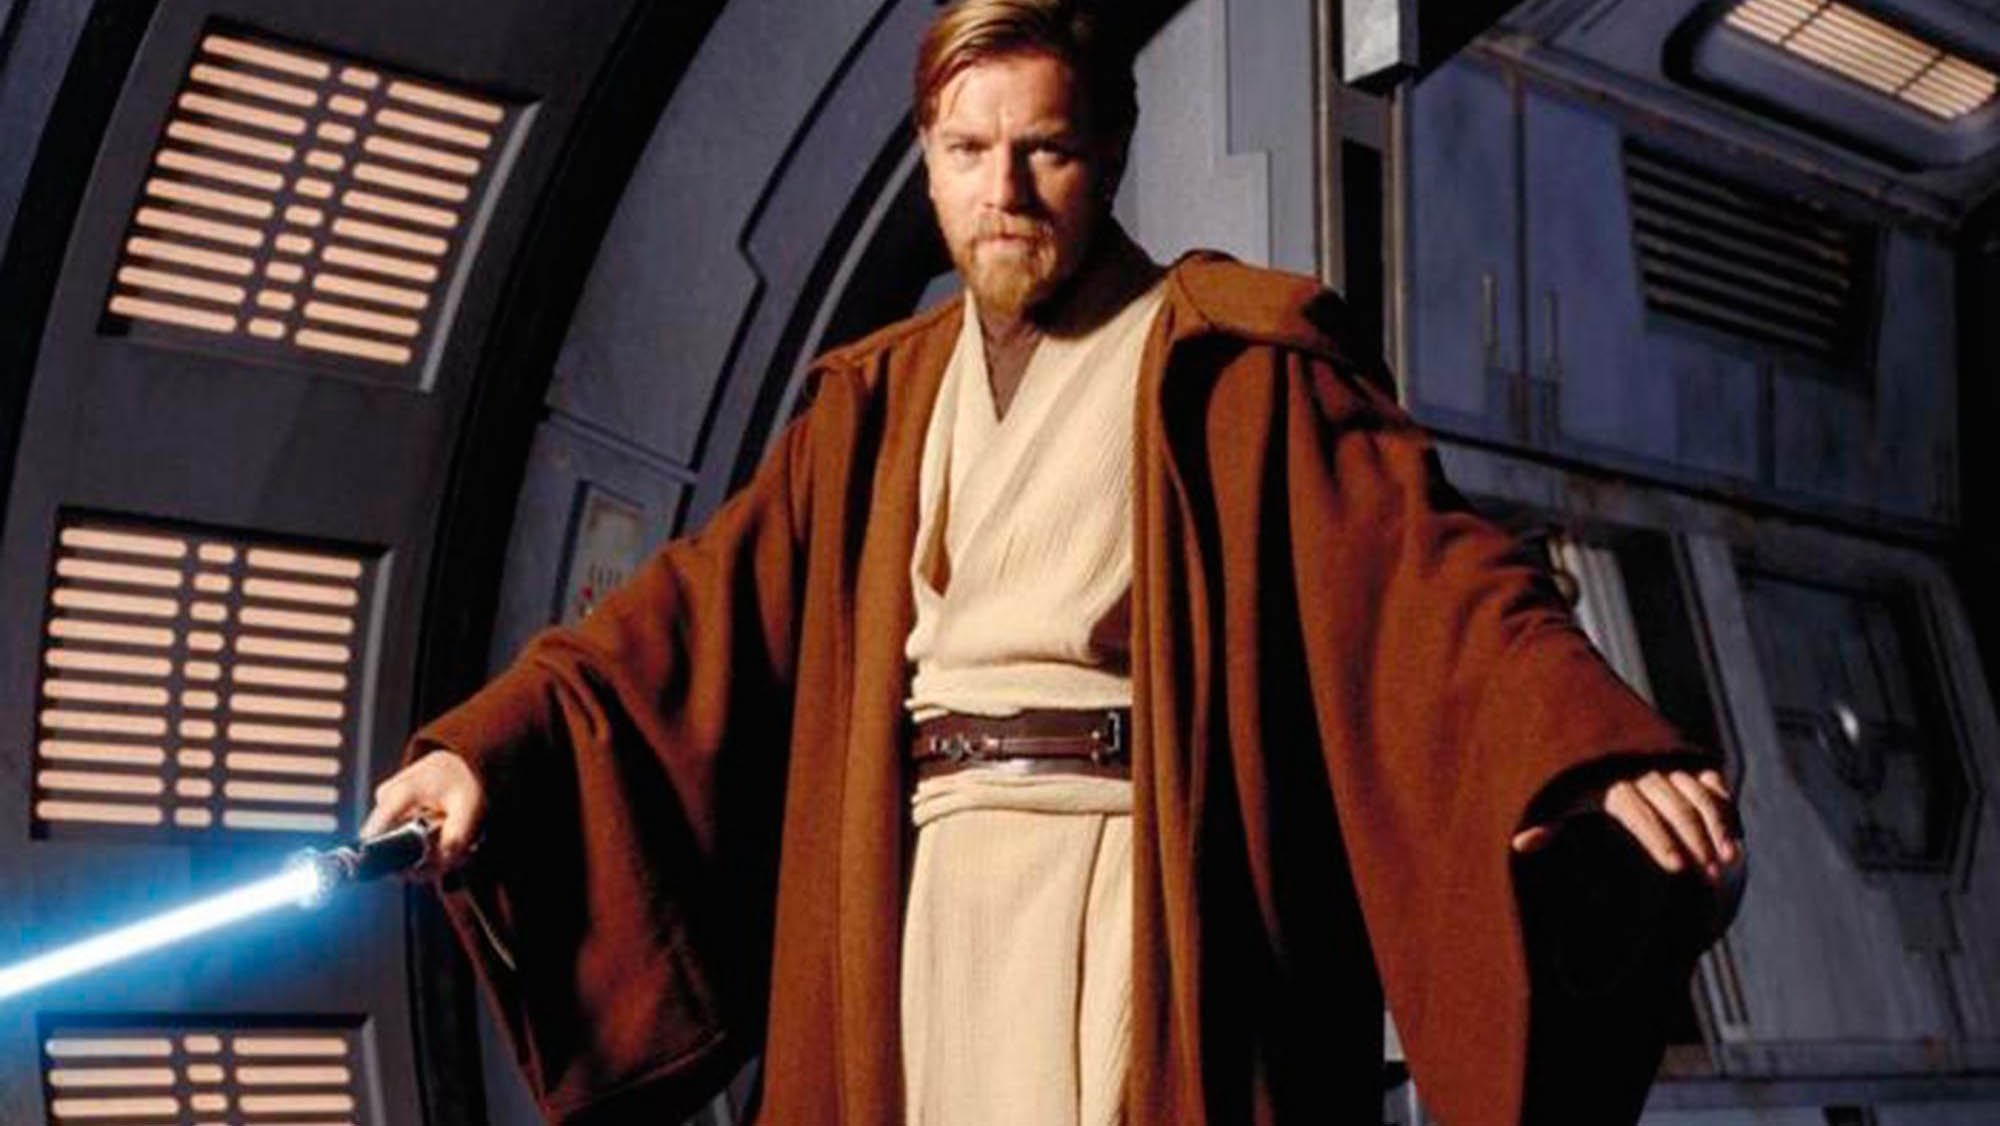 Disney+: Star Wars-Serie zu Obi-Wan Kenobi mit Ewan McGregor wird ab März 2021 gedreht